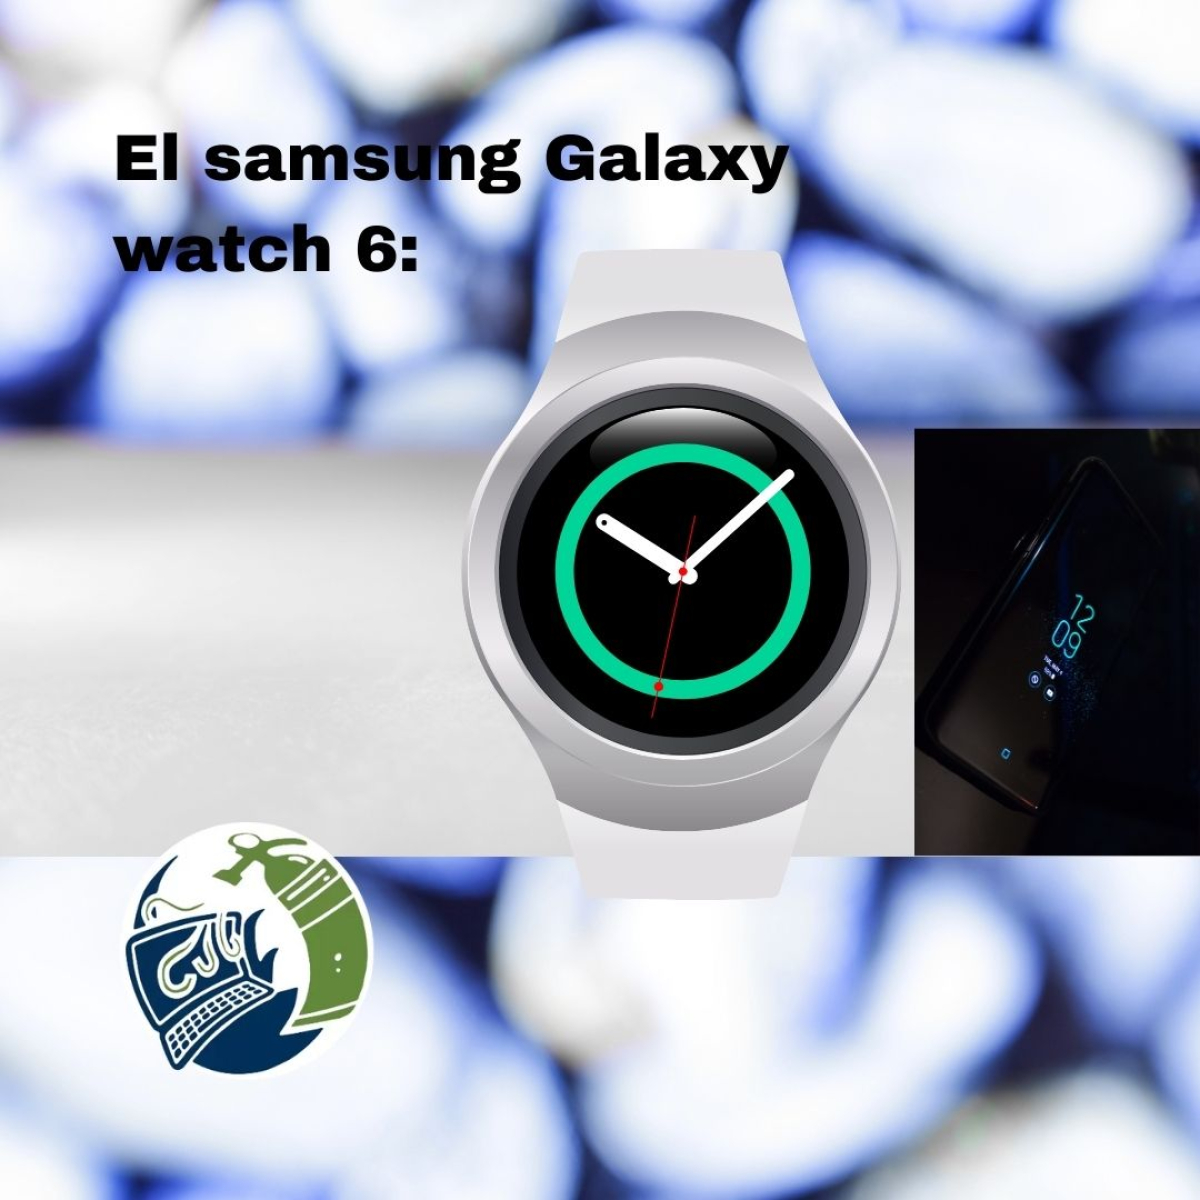 El nuevo smartwatch de Samsung